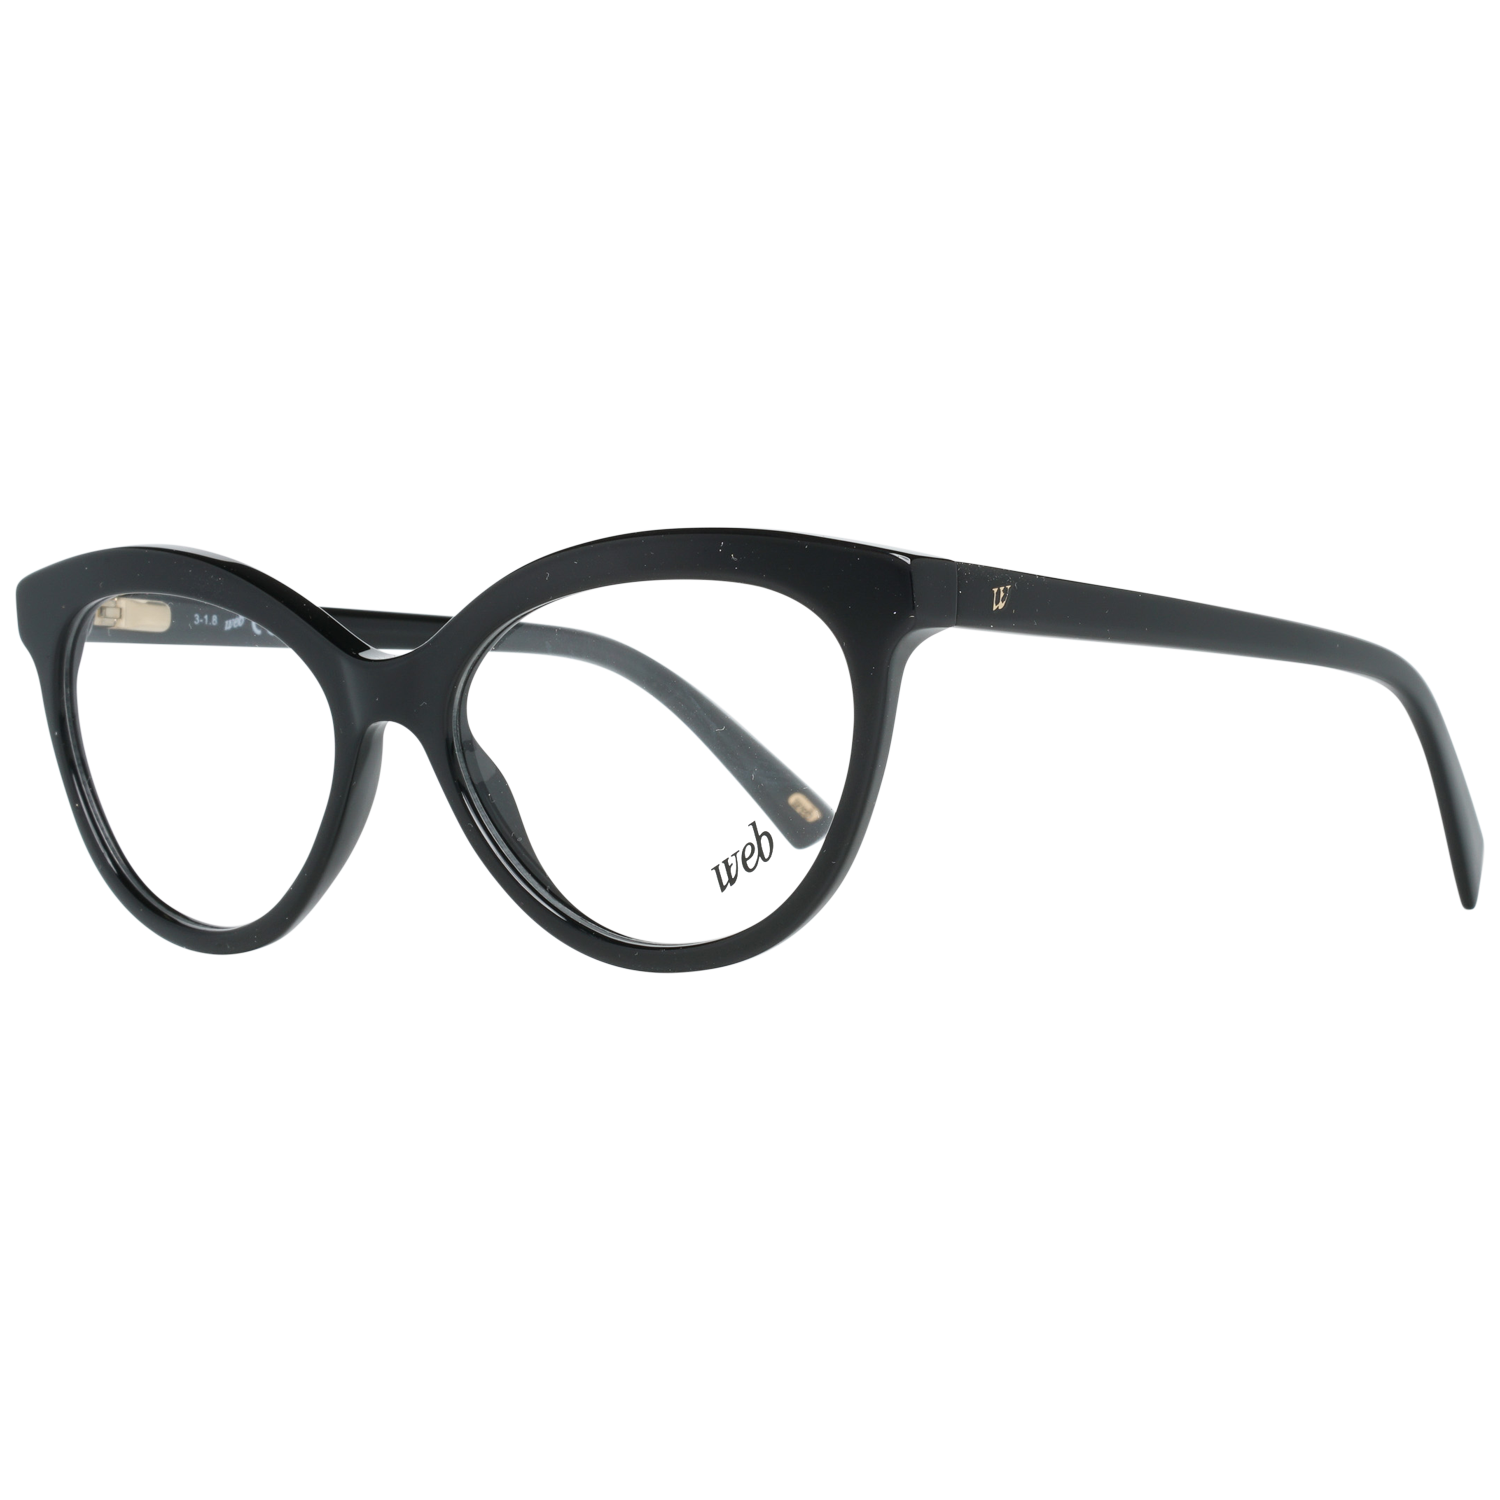 Web Frames Web Glasses Optical Frame WE5250 001 51 Eyeglasses Eyewear UK USA Australia 